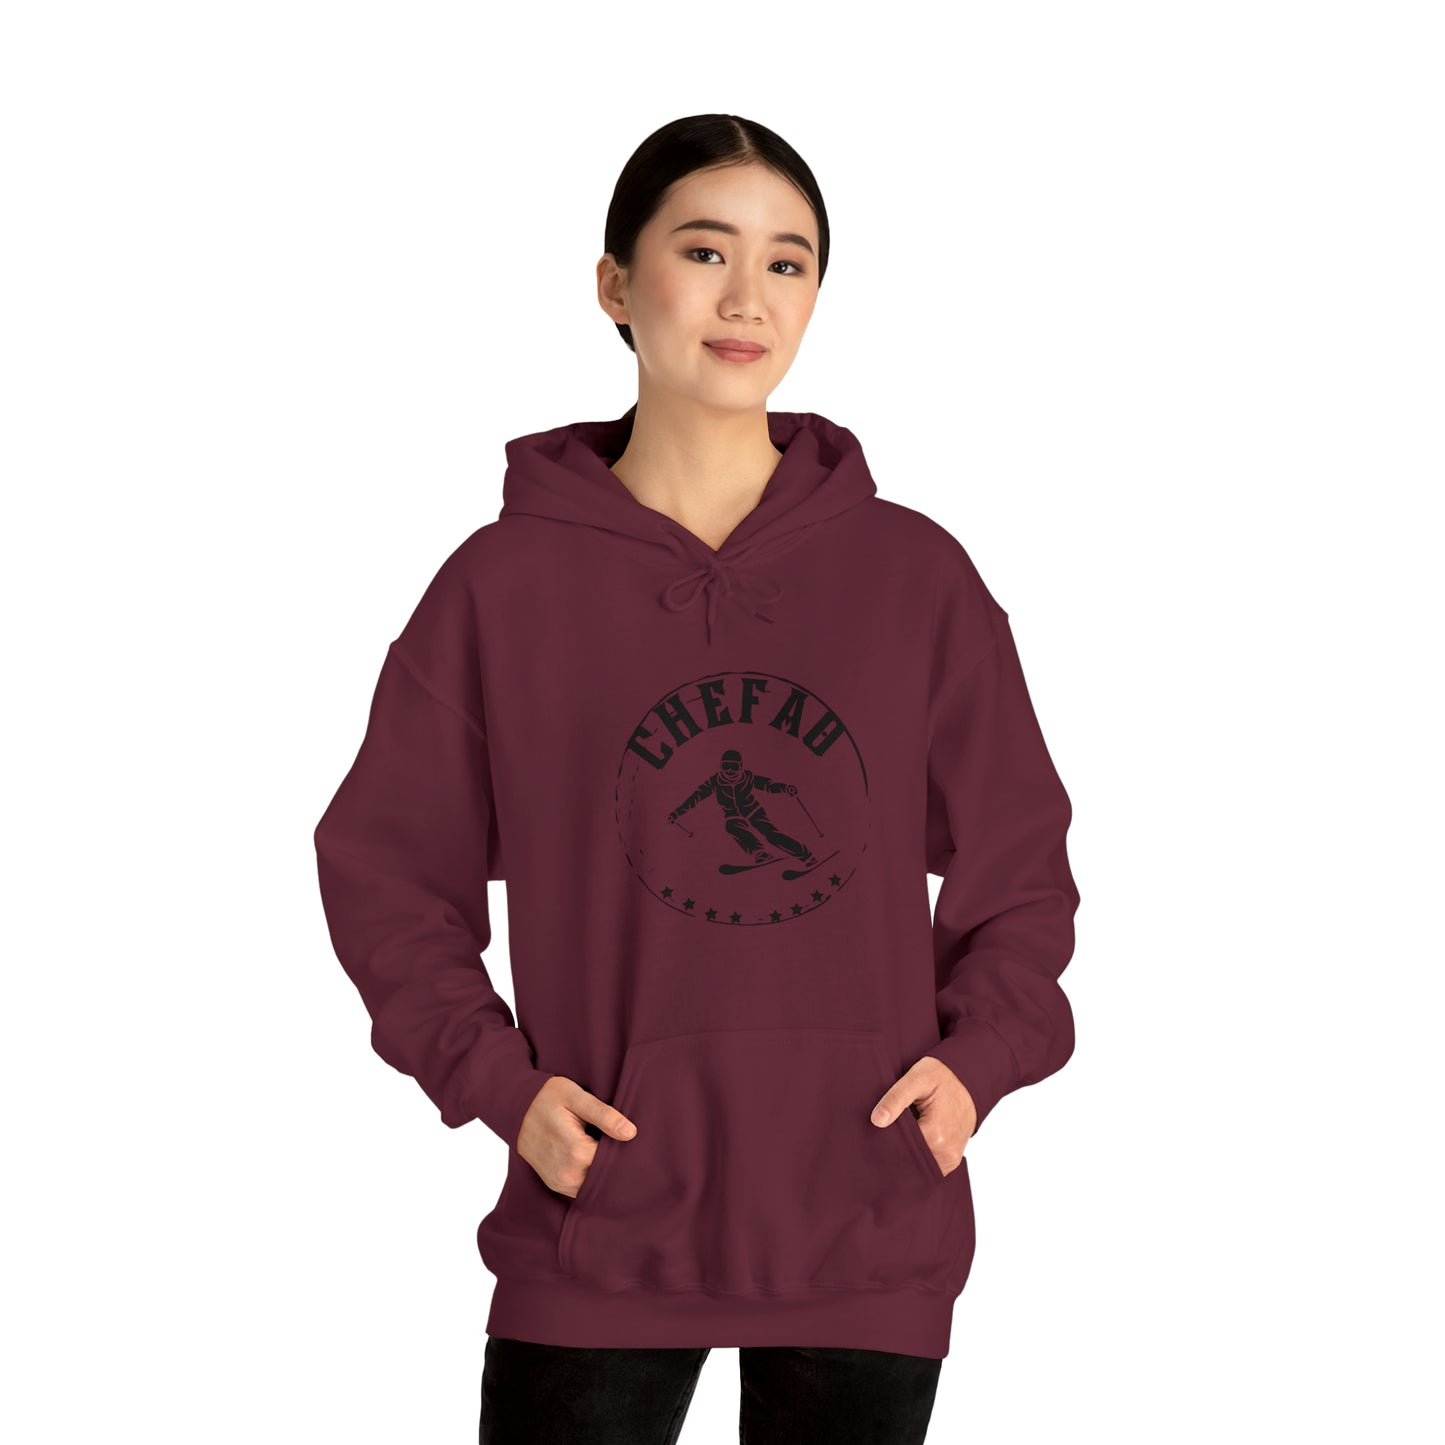 Chefao Skiing III, Unisex Heavy Blend Hooded Sweatshirt